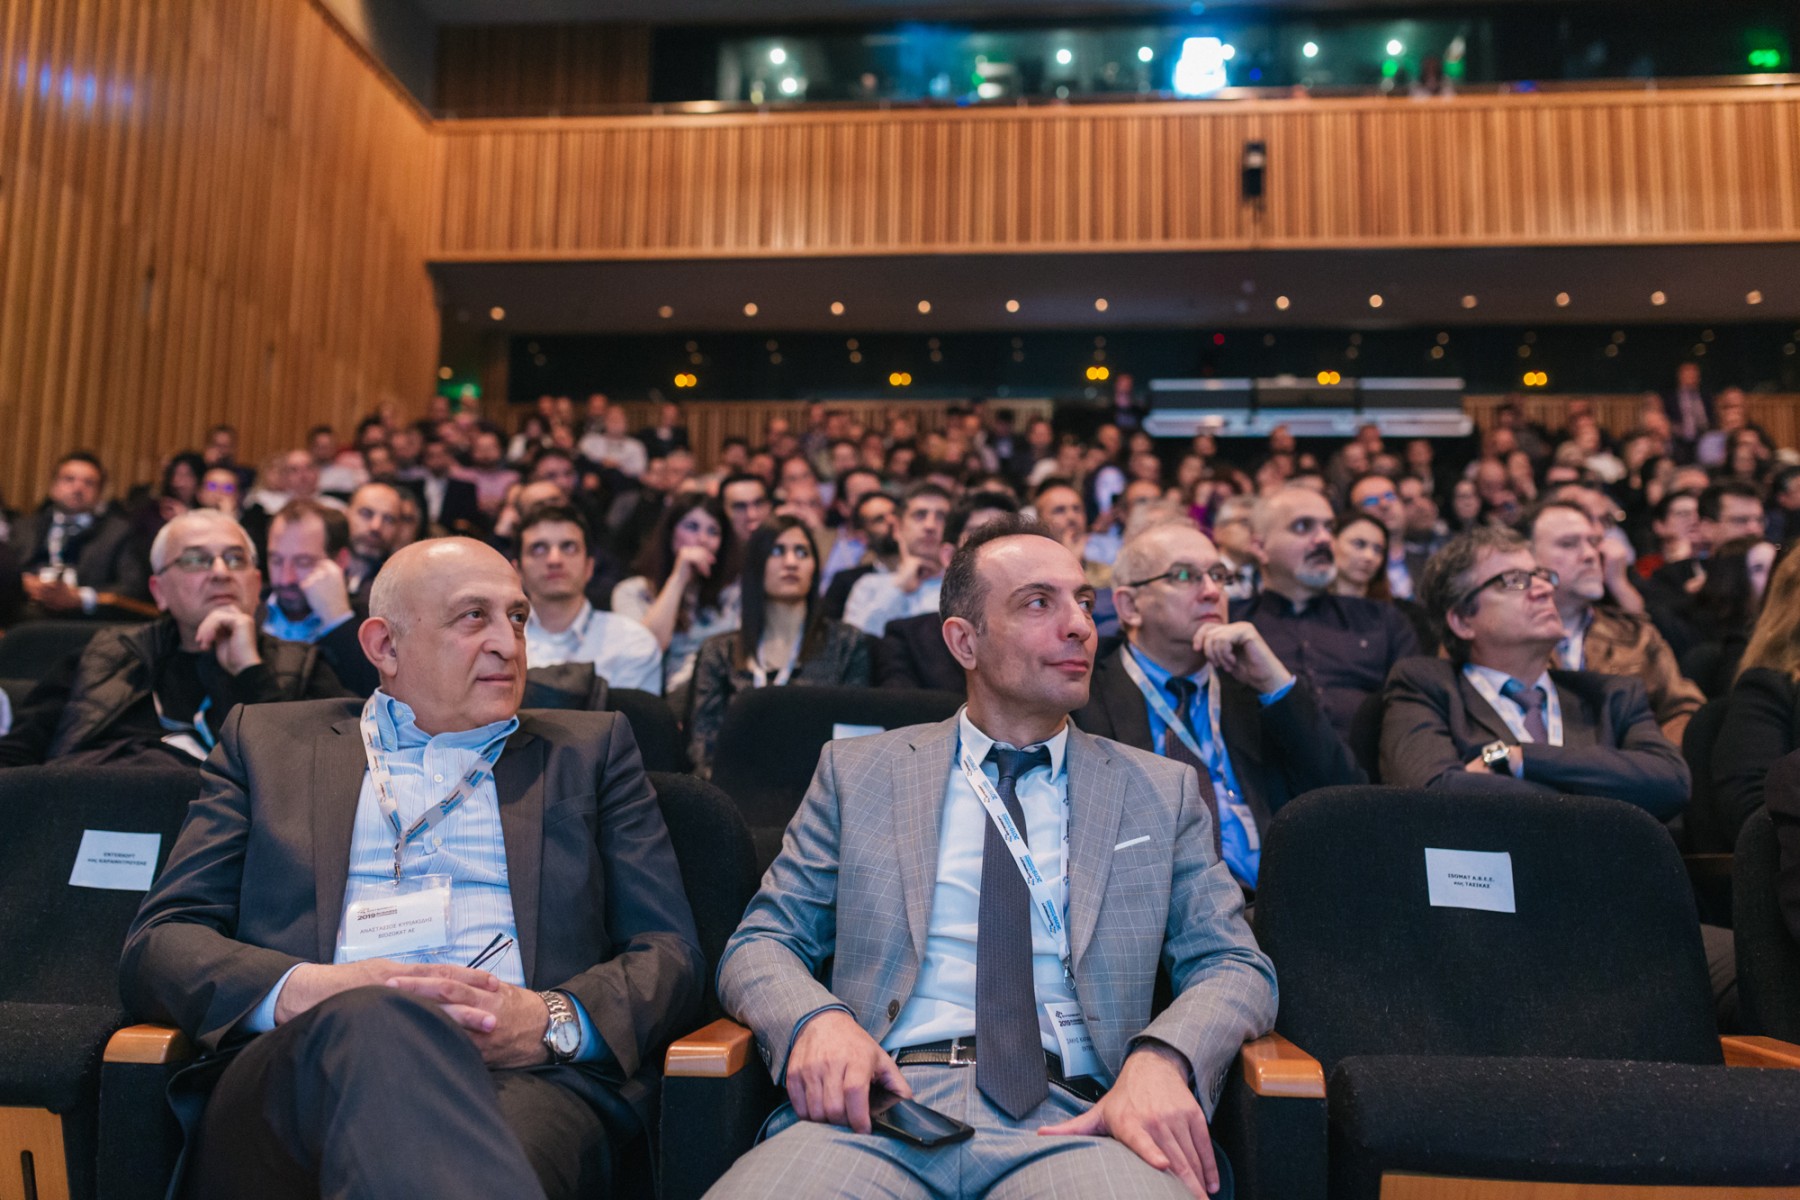 Entersoft Business Conference - Φωτογράφιση συνεδρίου Θεσσαλονίκη